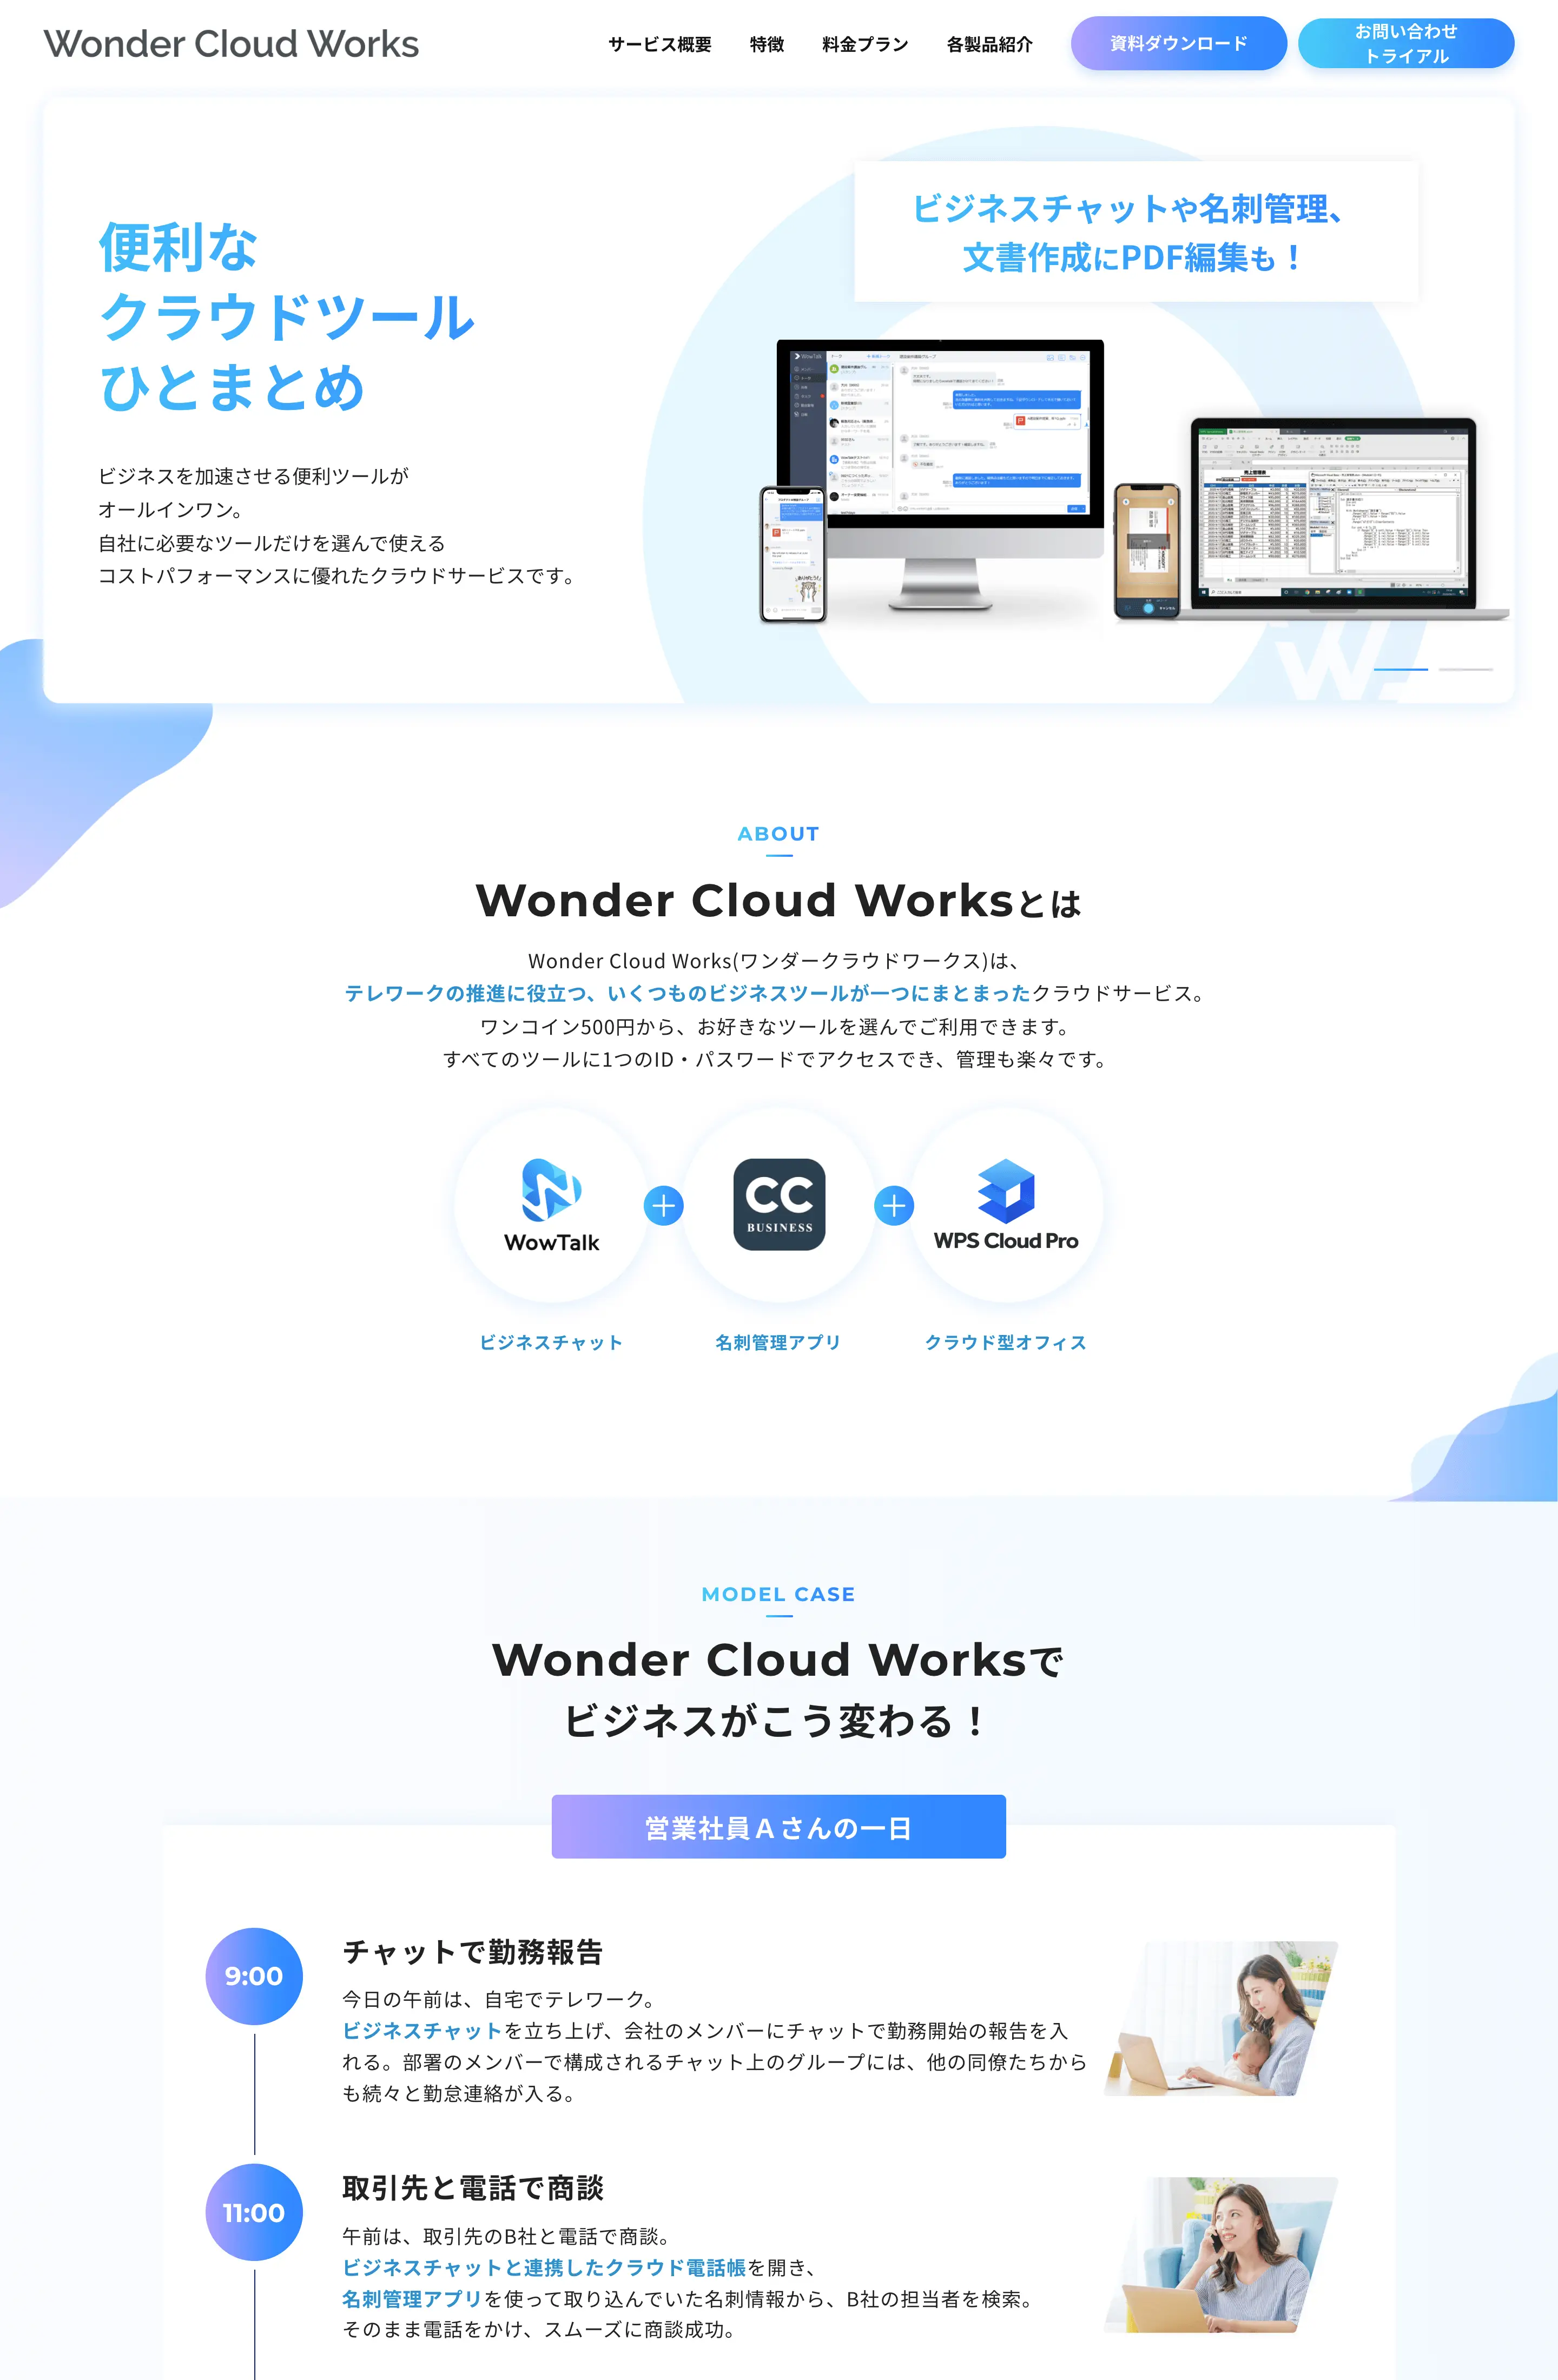 ワウテック ㈱ - Wonder Cloud Works